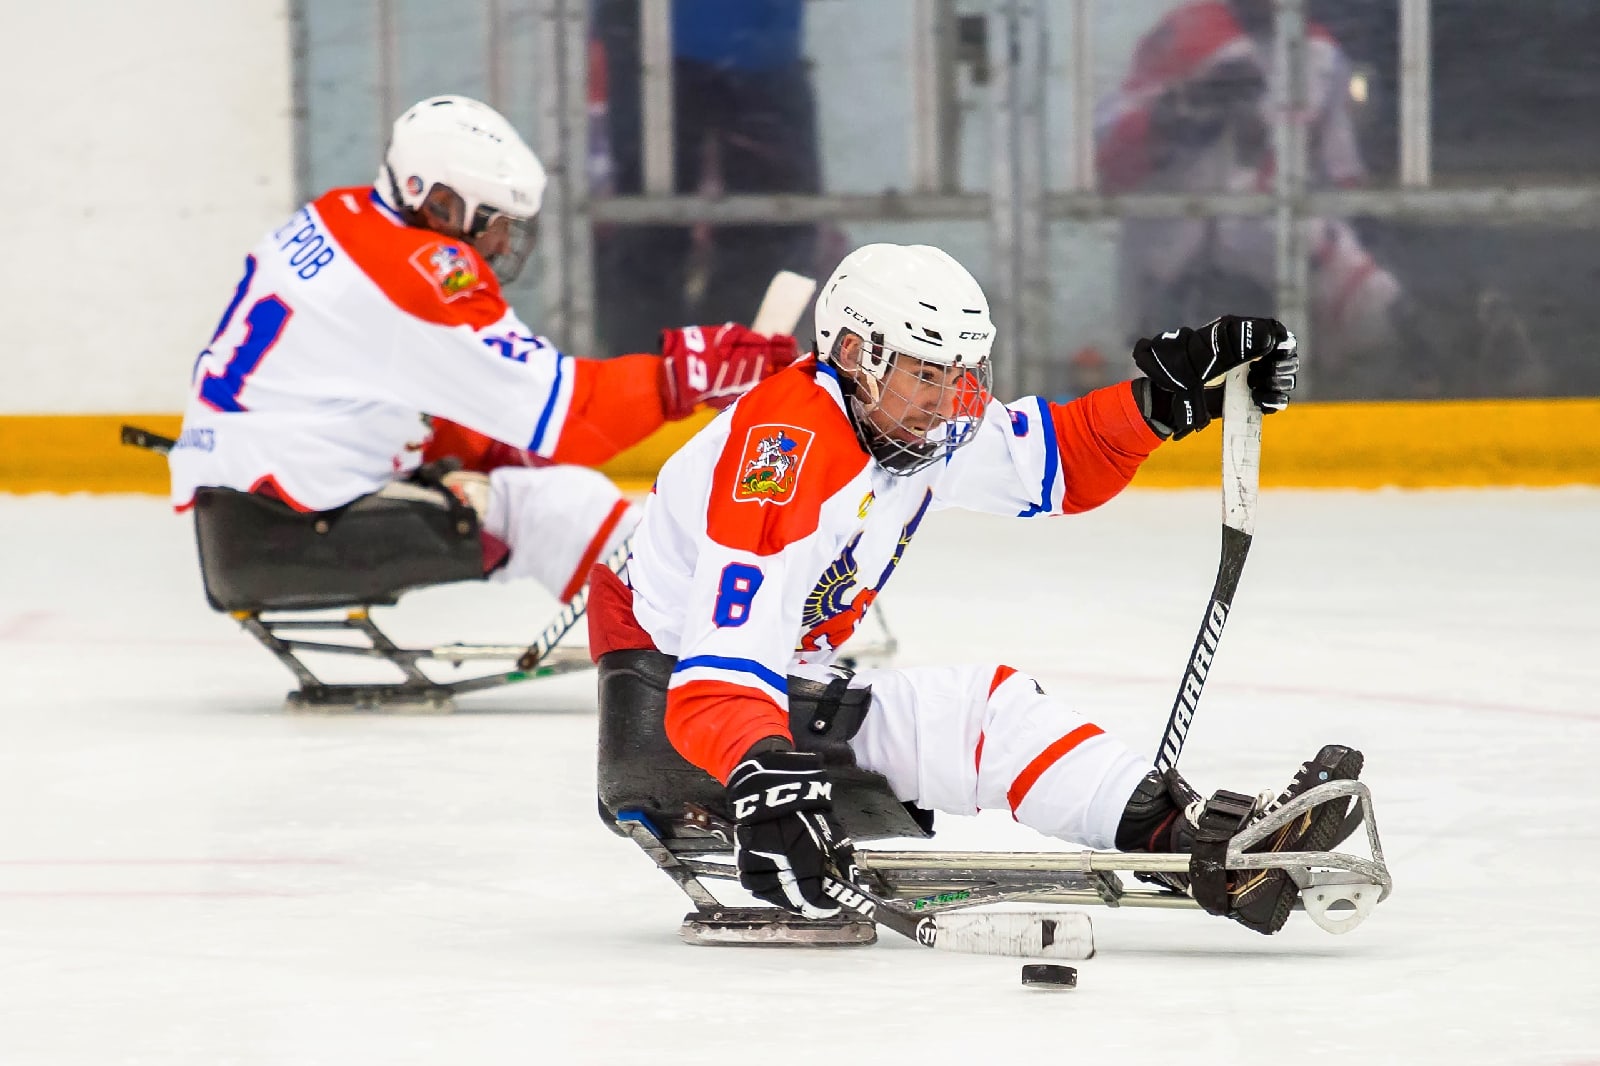 Подмосковный «Феникс» выиграл первый этап чемпионата России по следж-хоккею в Ижевске